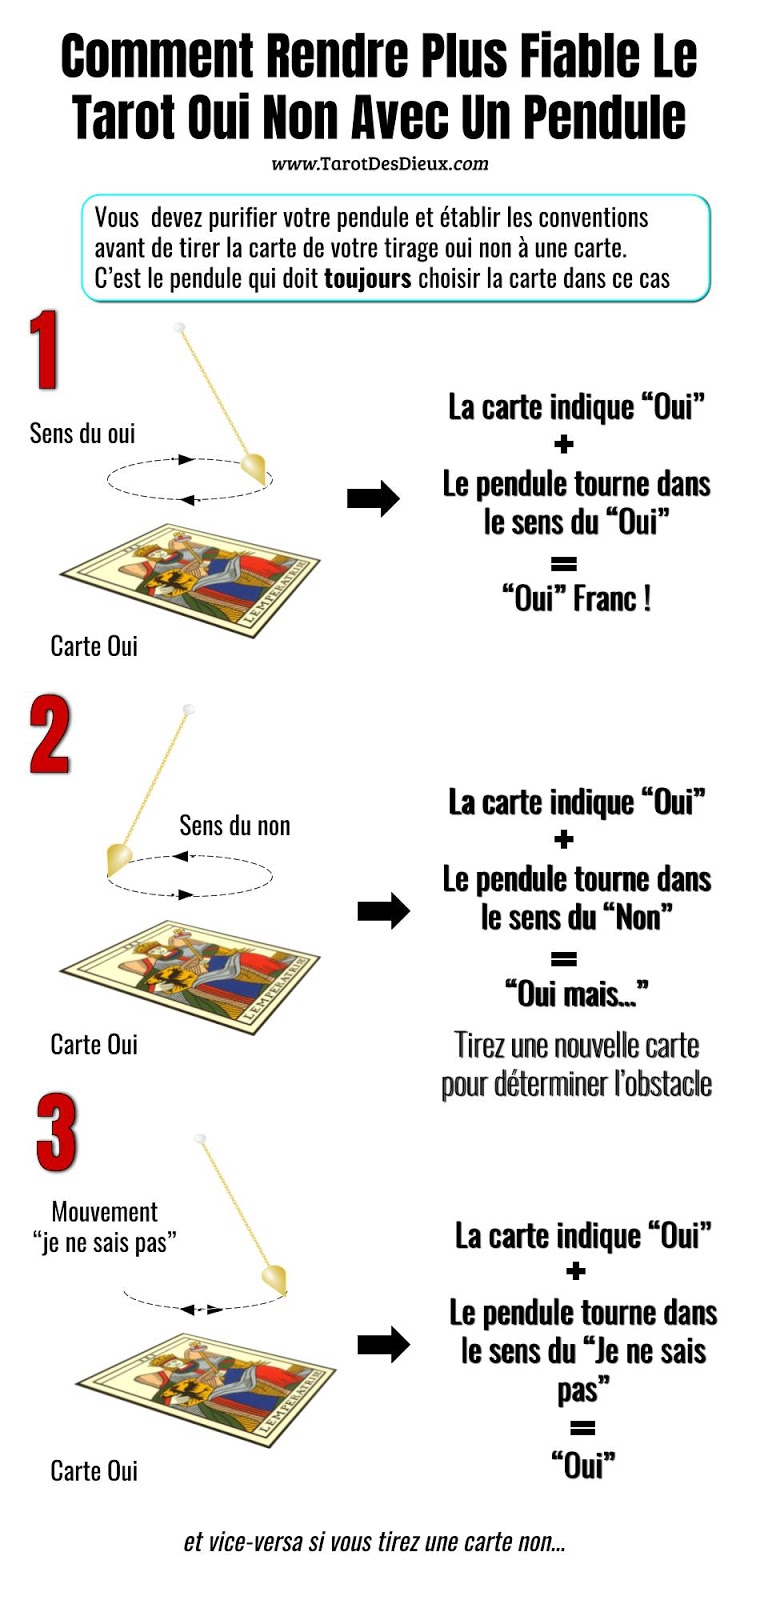 Les règles d'utilisation du pendule avec un tarot oui non à une seule carte